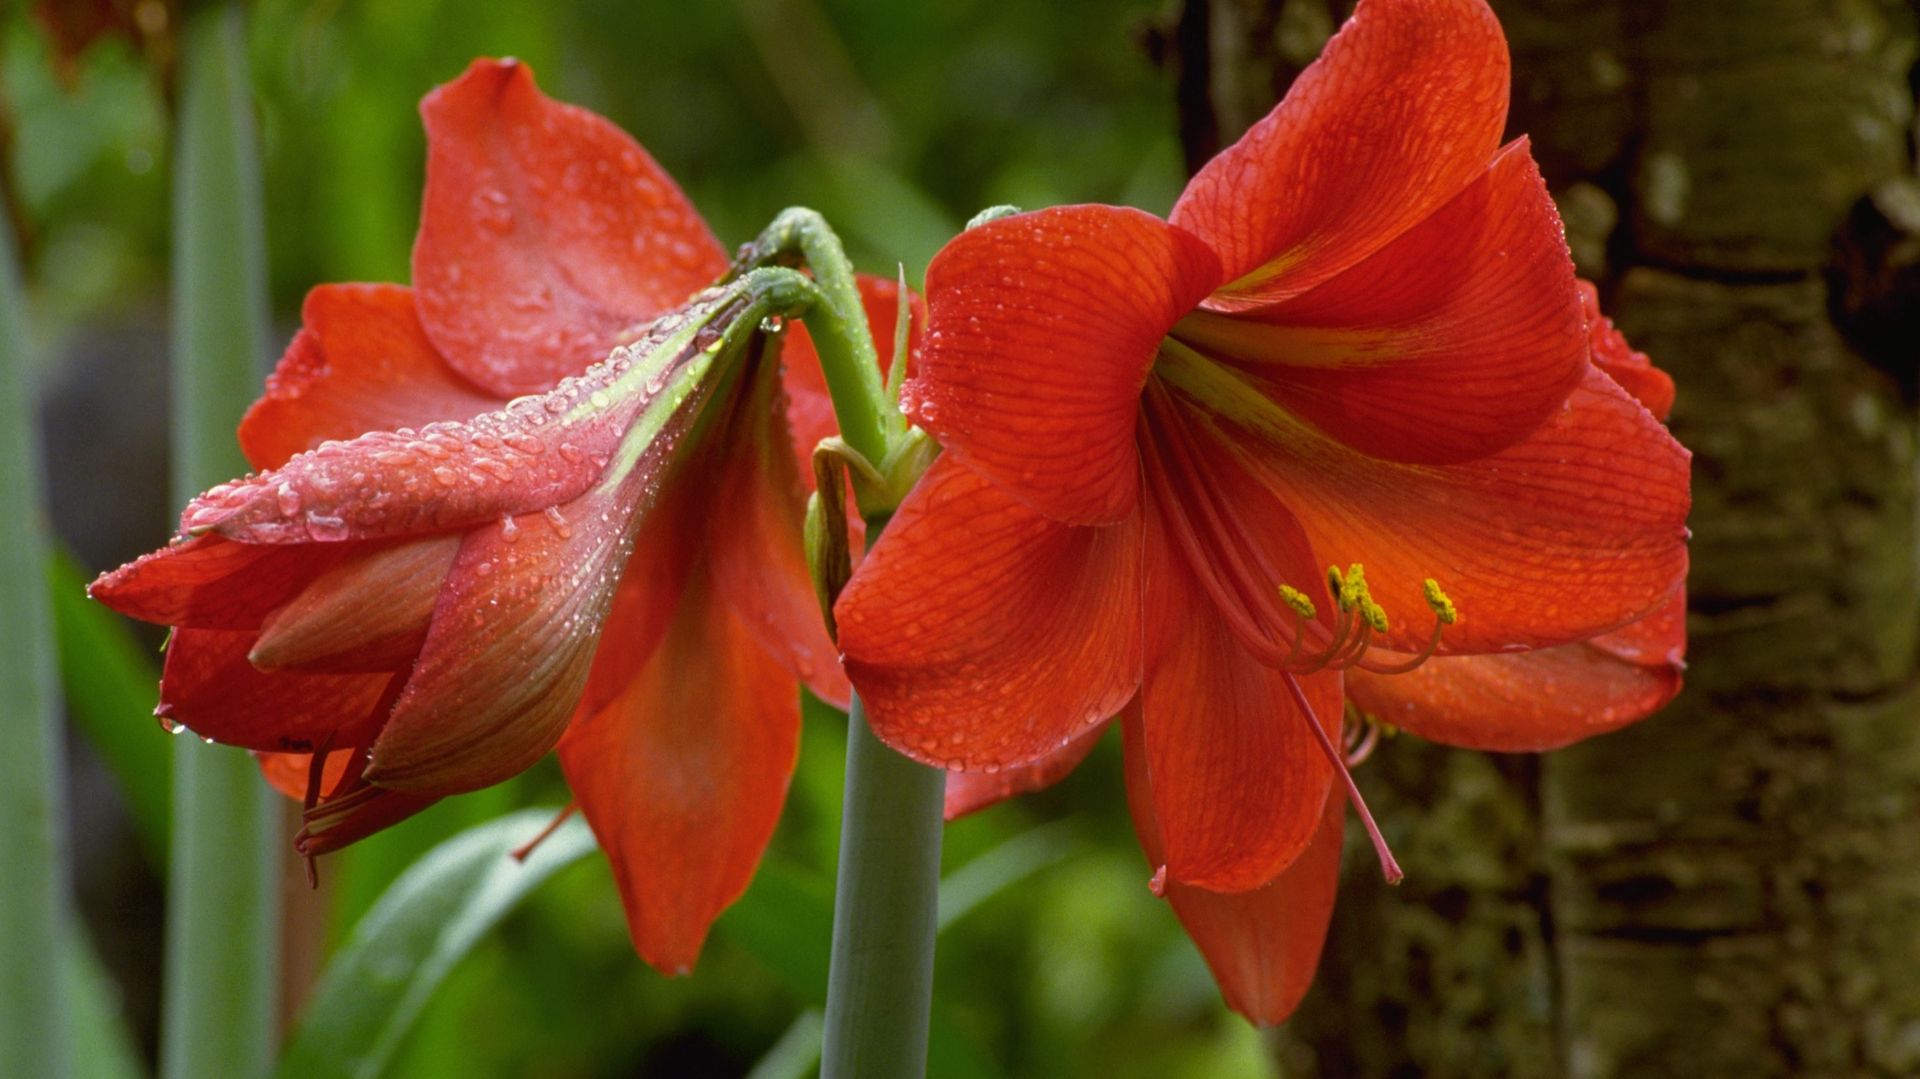 De nombreuses variétés d’amaryllis sont disponibles, avec des nuances de couleurs, des corolles rayées, des fleurs doubles.